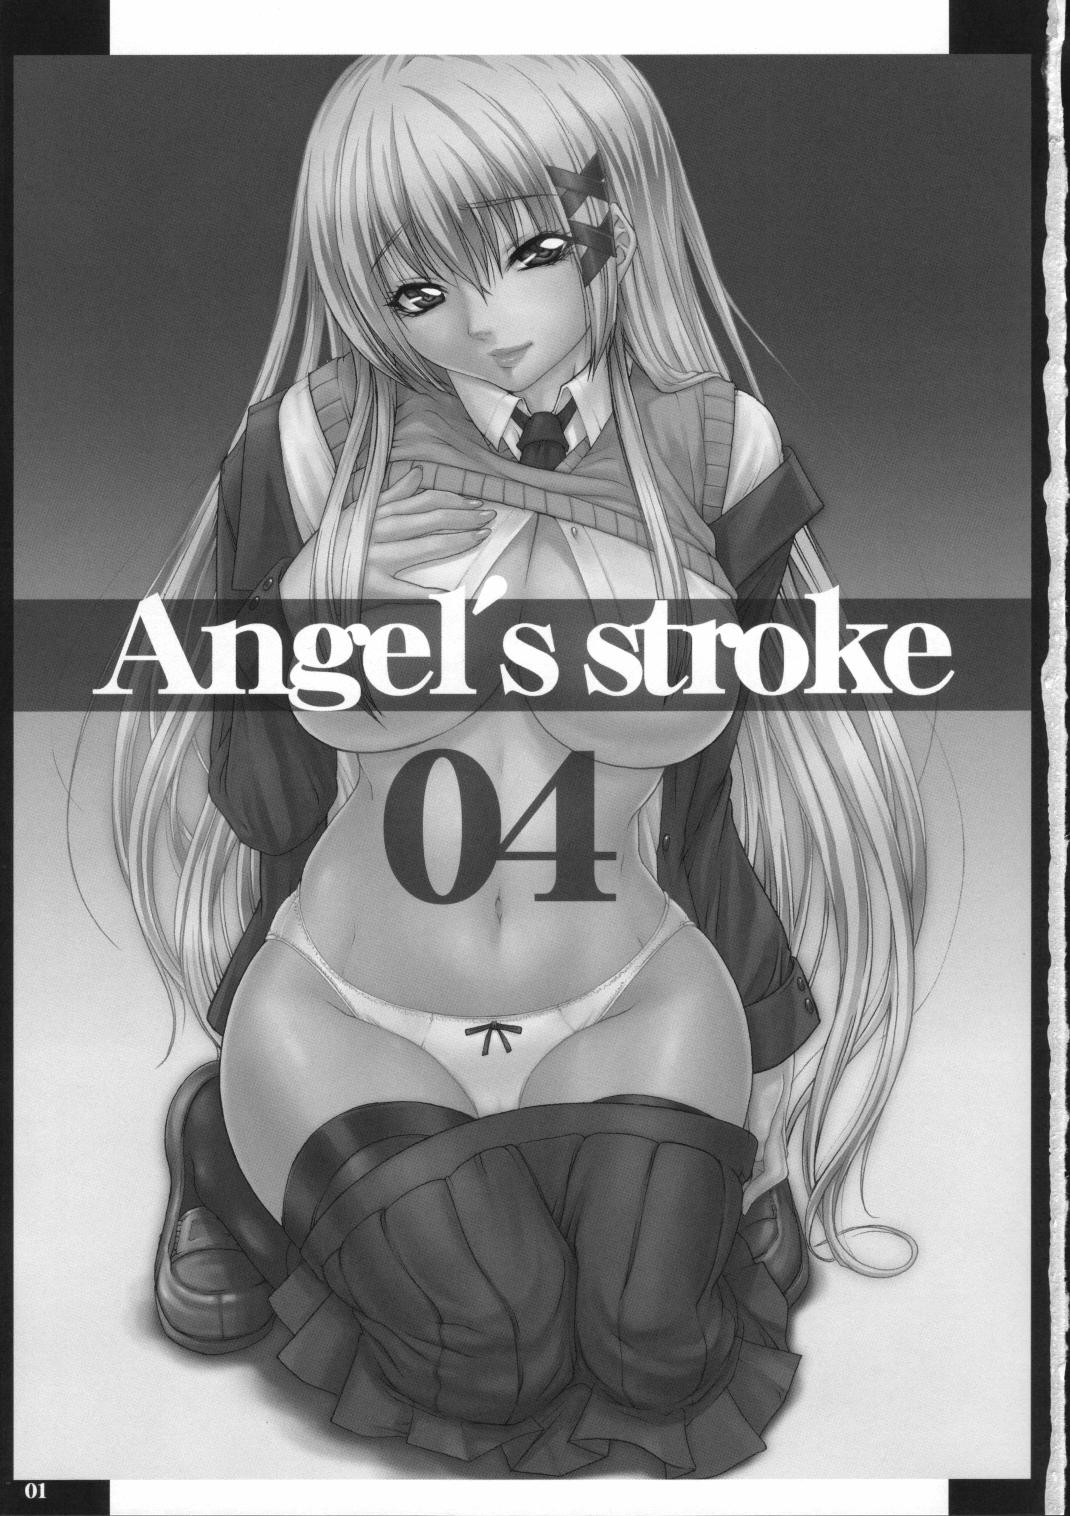 Angel's stroke 04 1